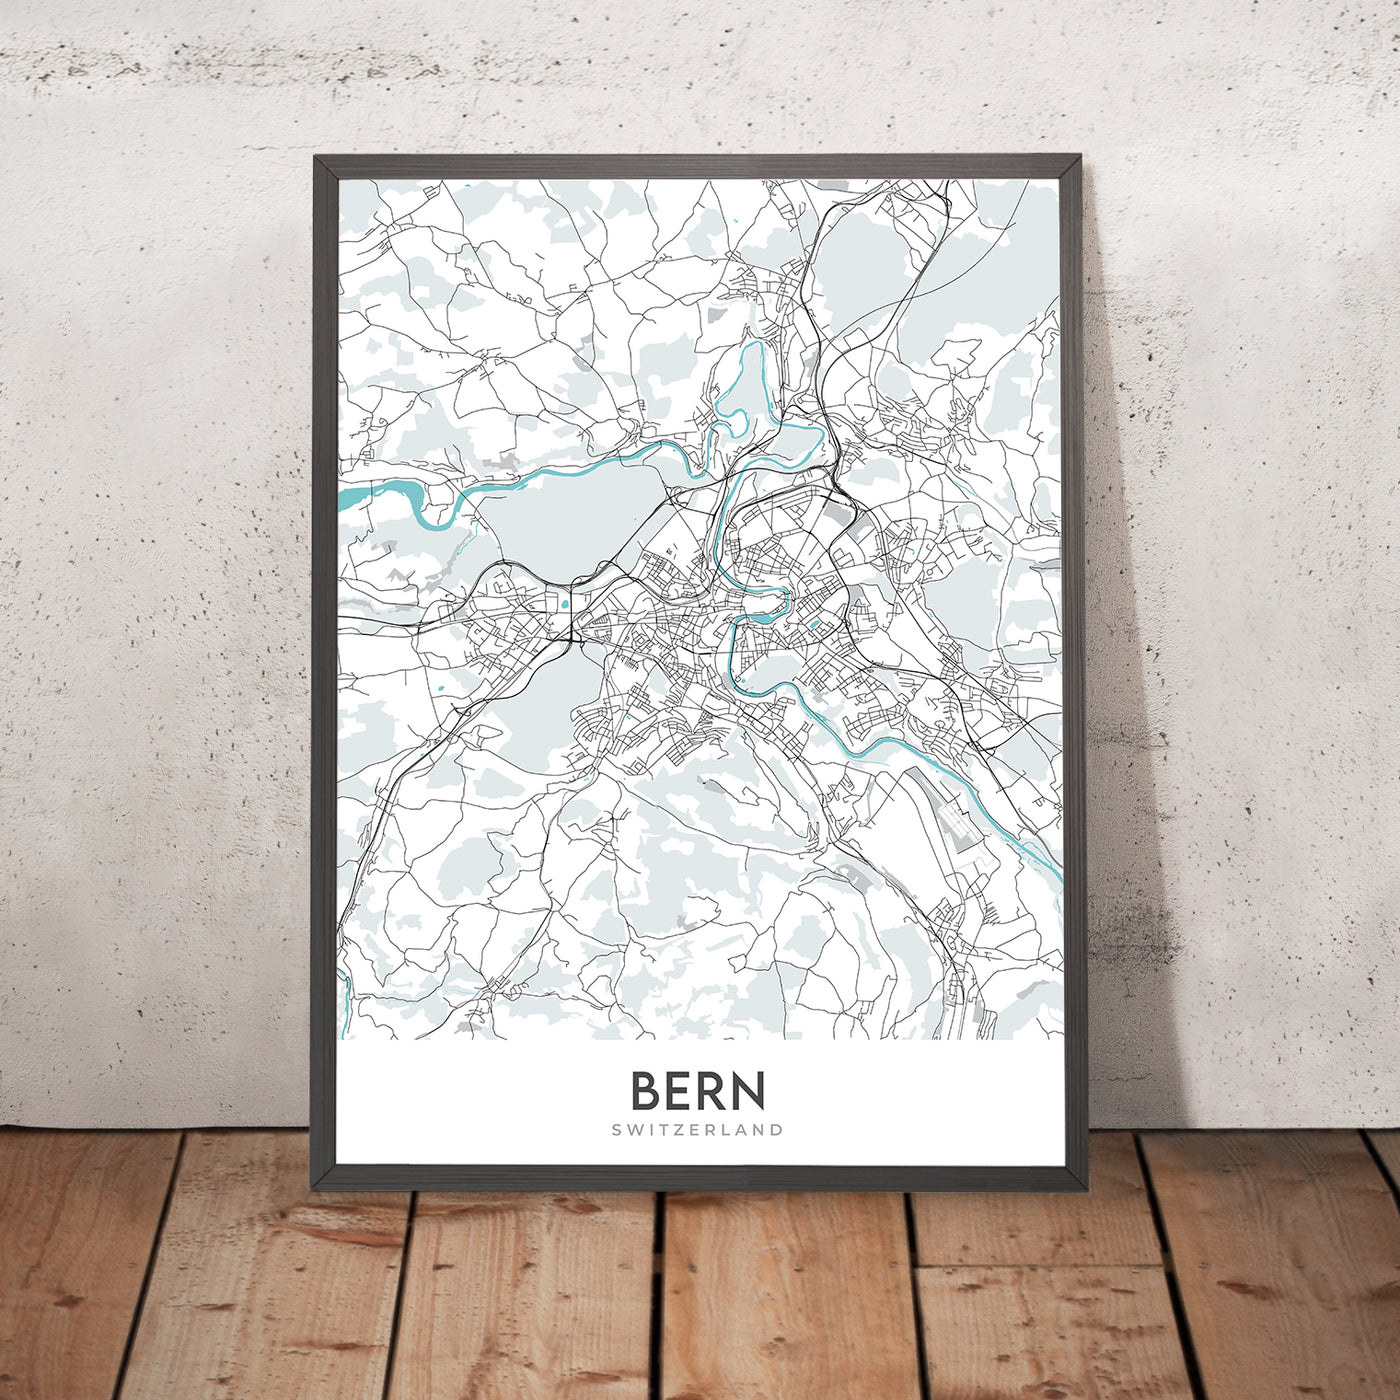 Plan de la ville moderne de Berne, Suisse : Palais fédéral, tour de l'horloge, rivière Aare, Breitenrain-Lorraine, Länggasse-Felsenau